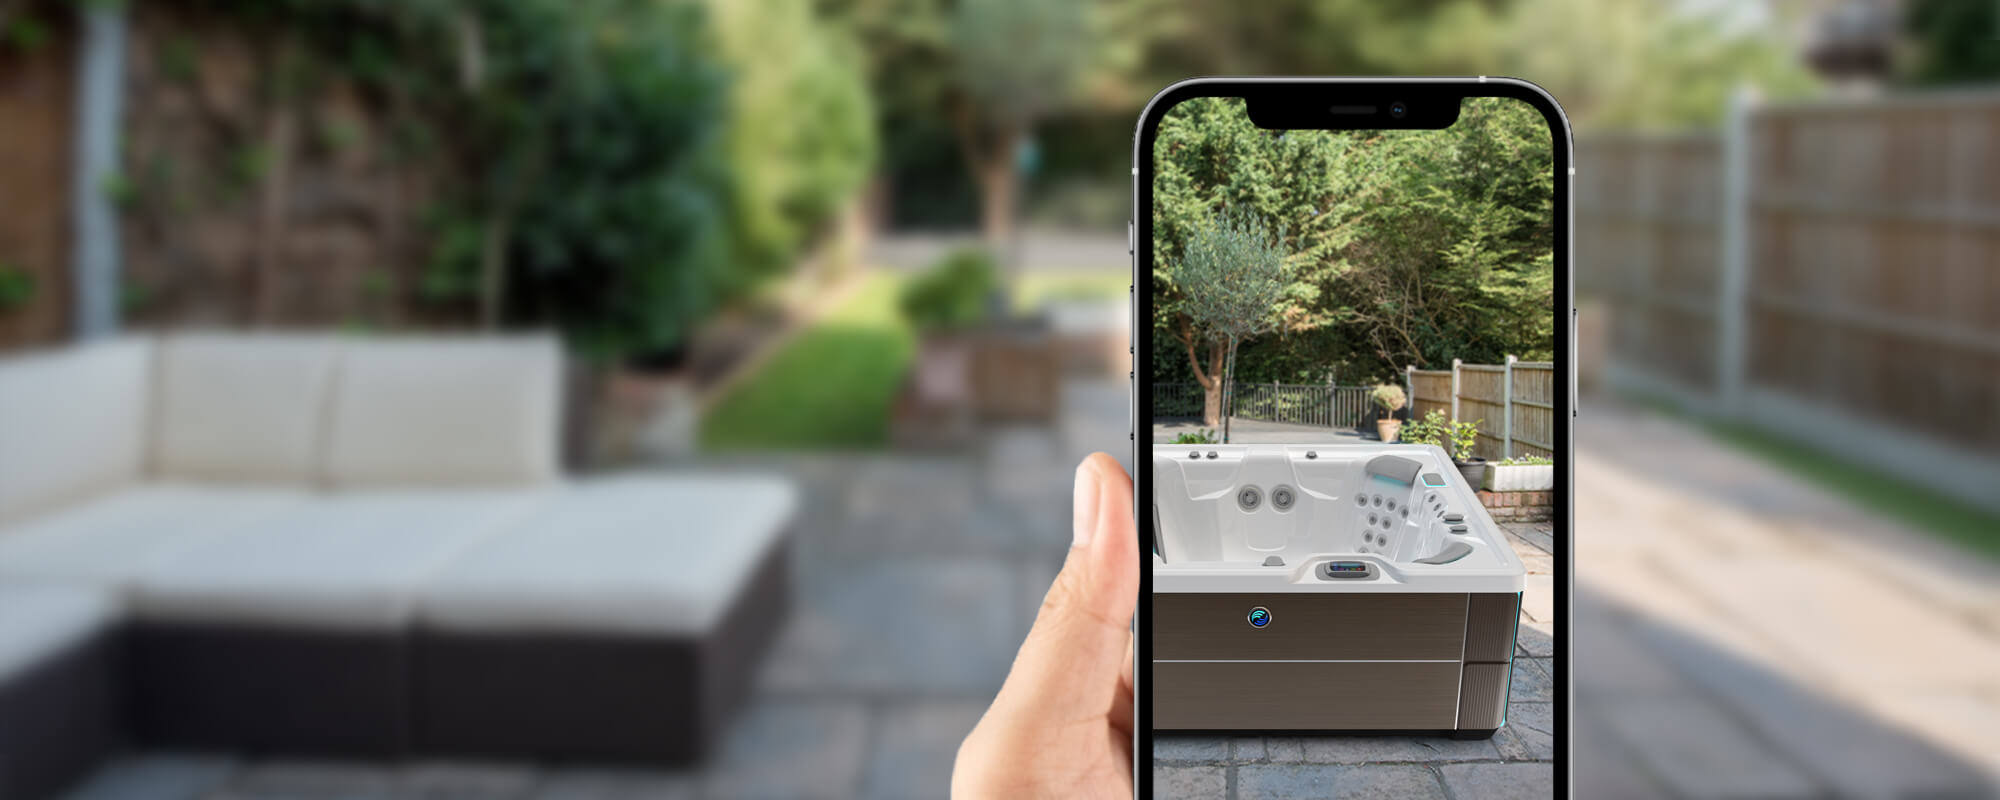 Applications de réalité augmentée pour visualiser les spas Endless Pools et Hot Spring chez soi